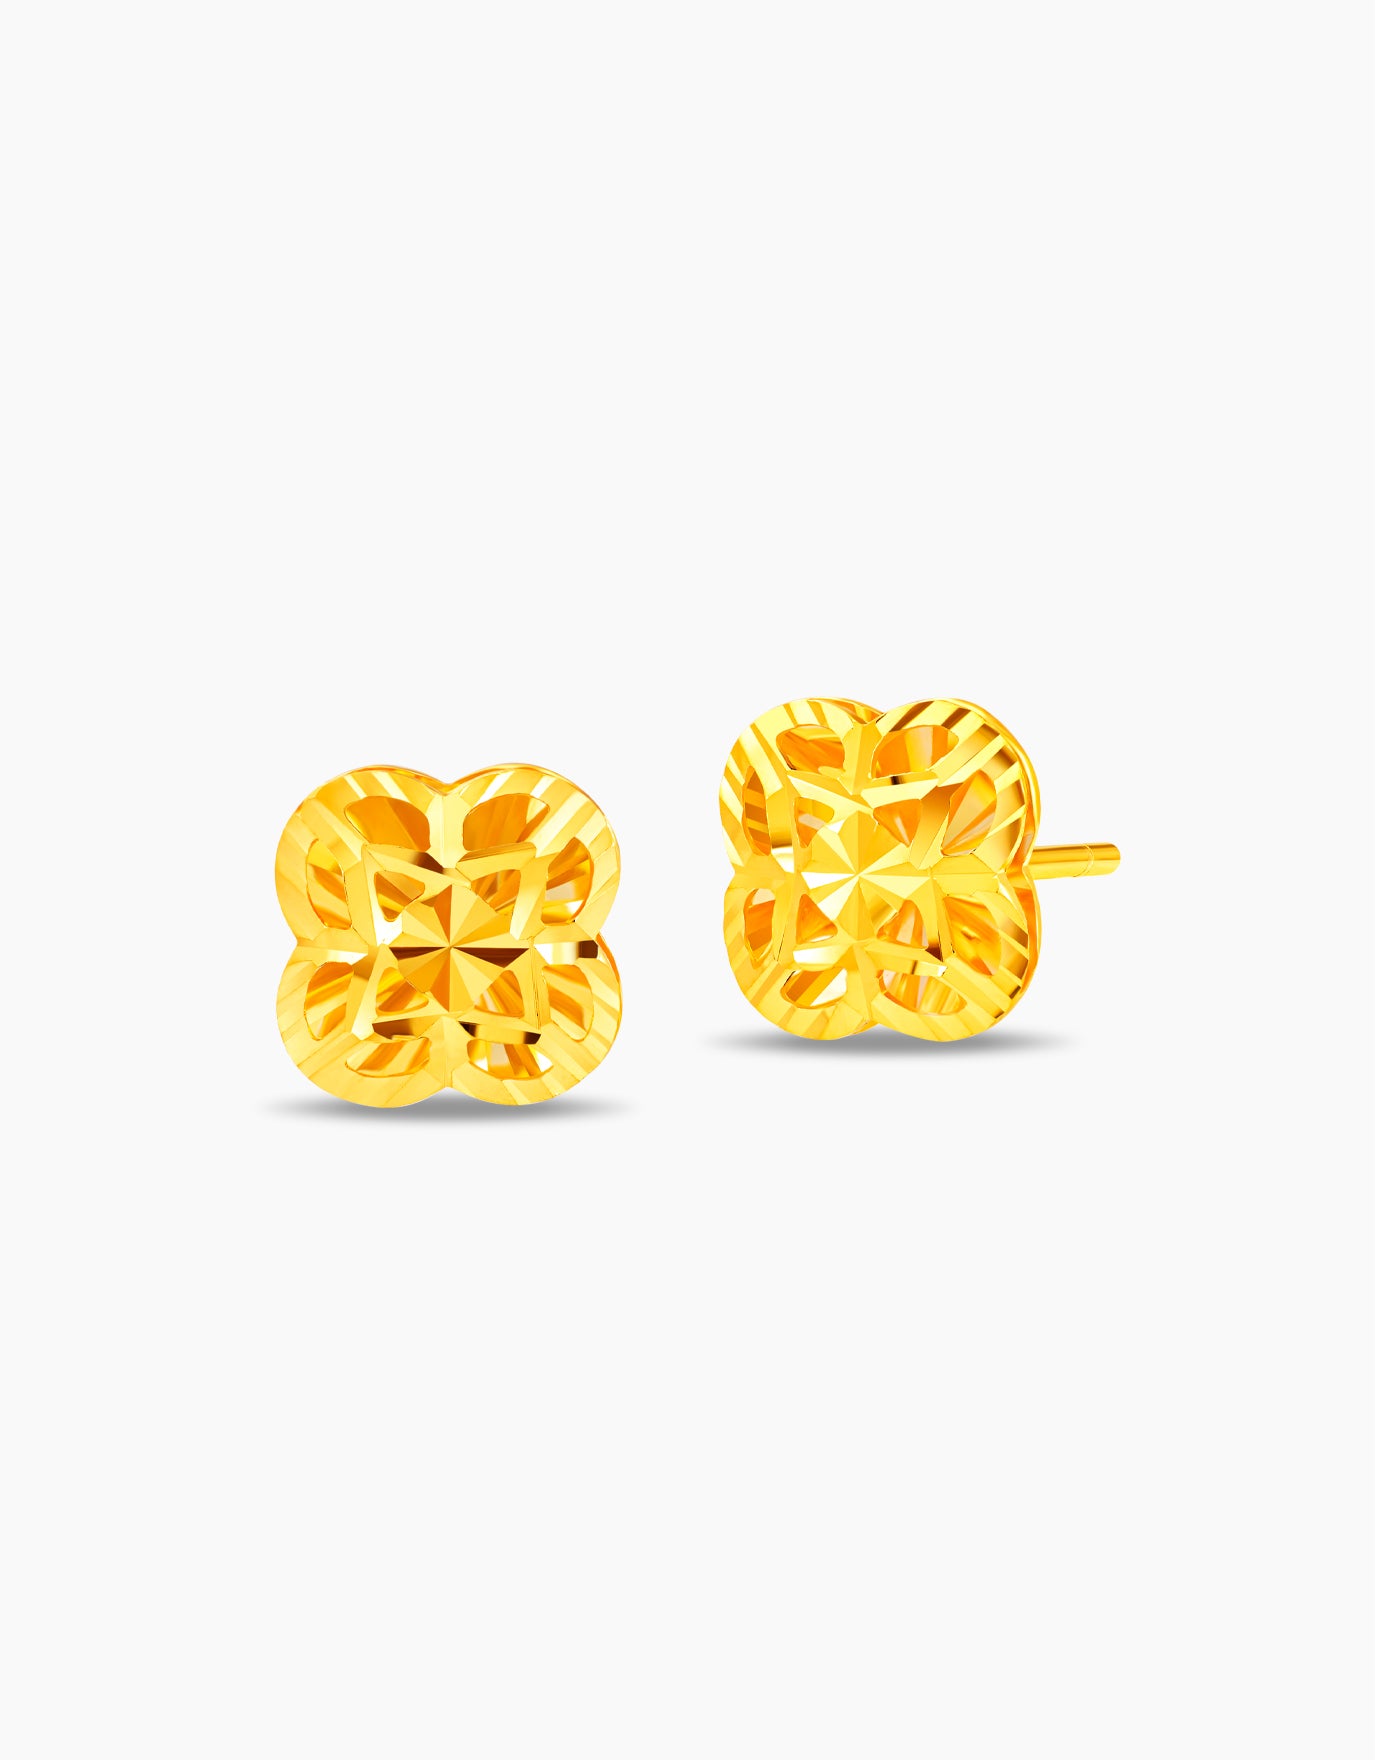 LVC 9IN Rosalind 999 Gold Earrings